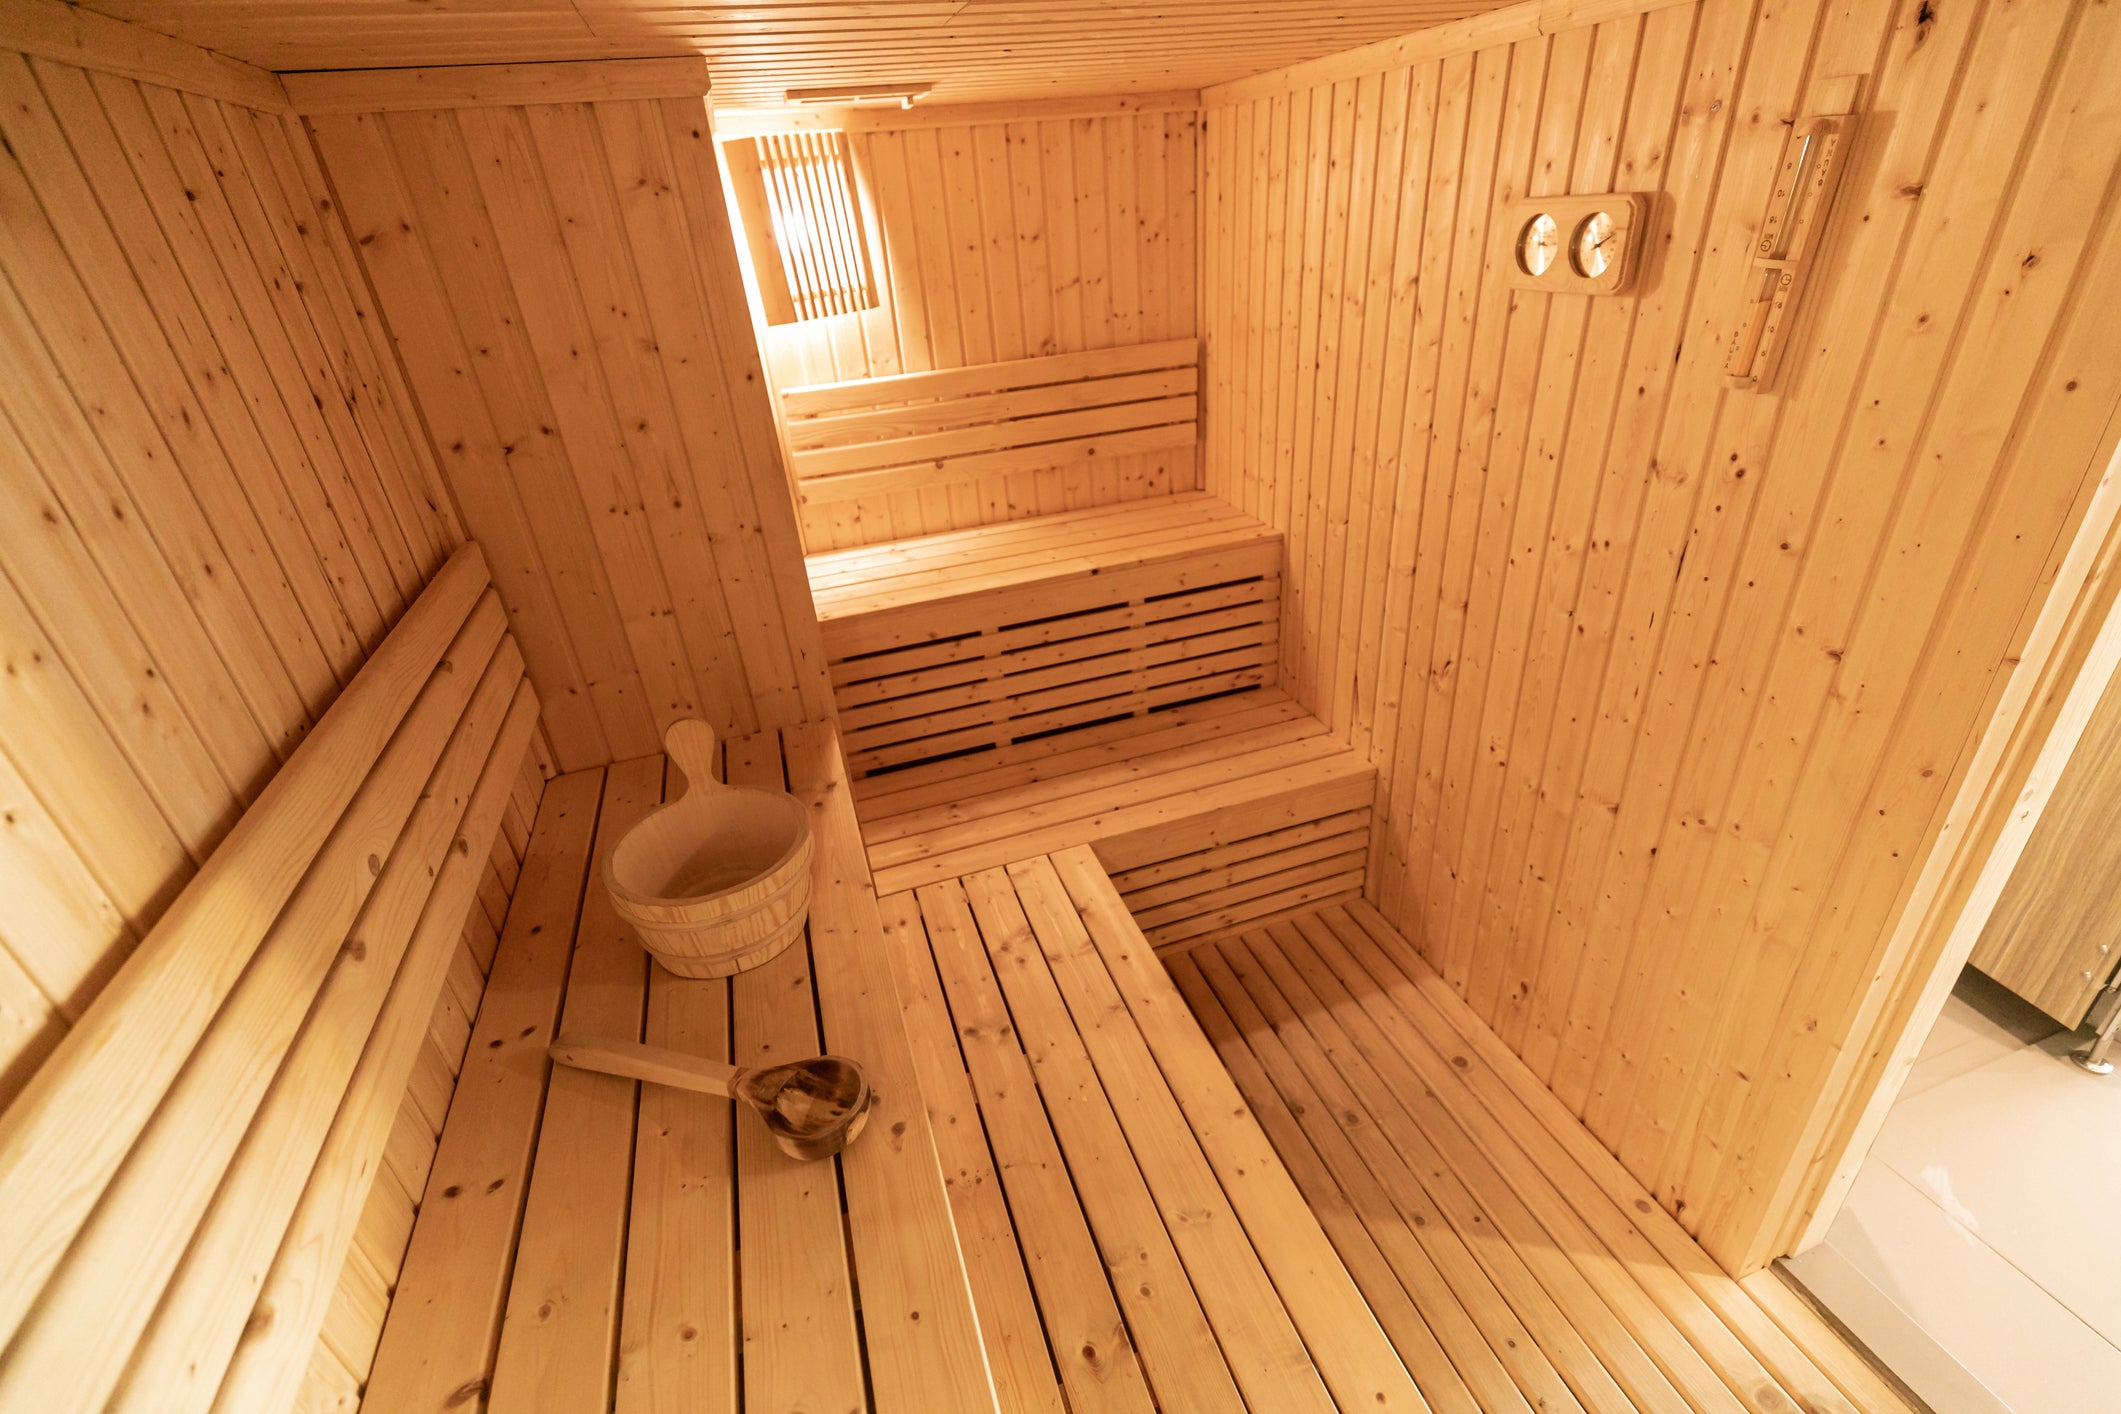 Projekt Sauna: Anleitungen und Ideen